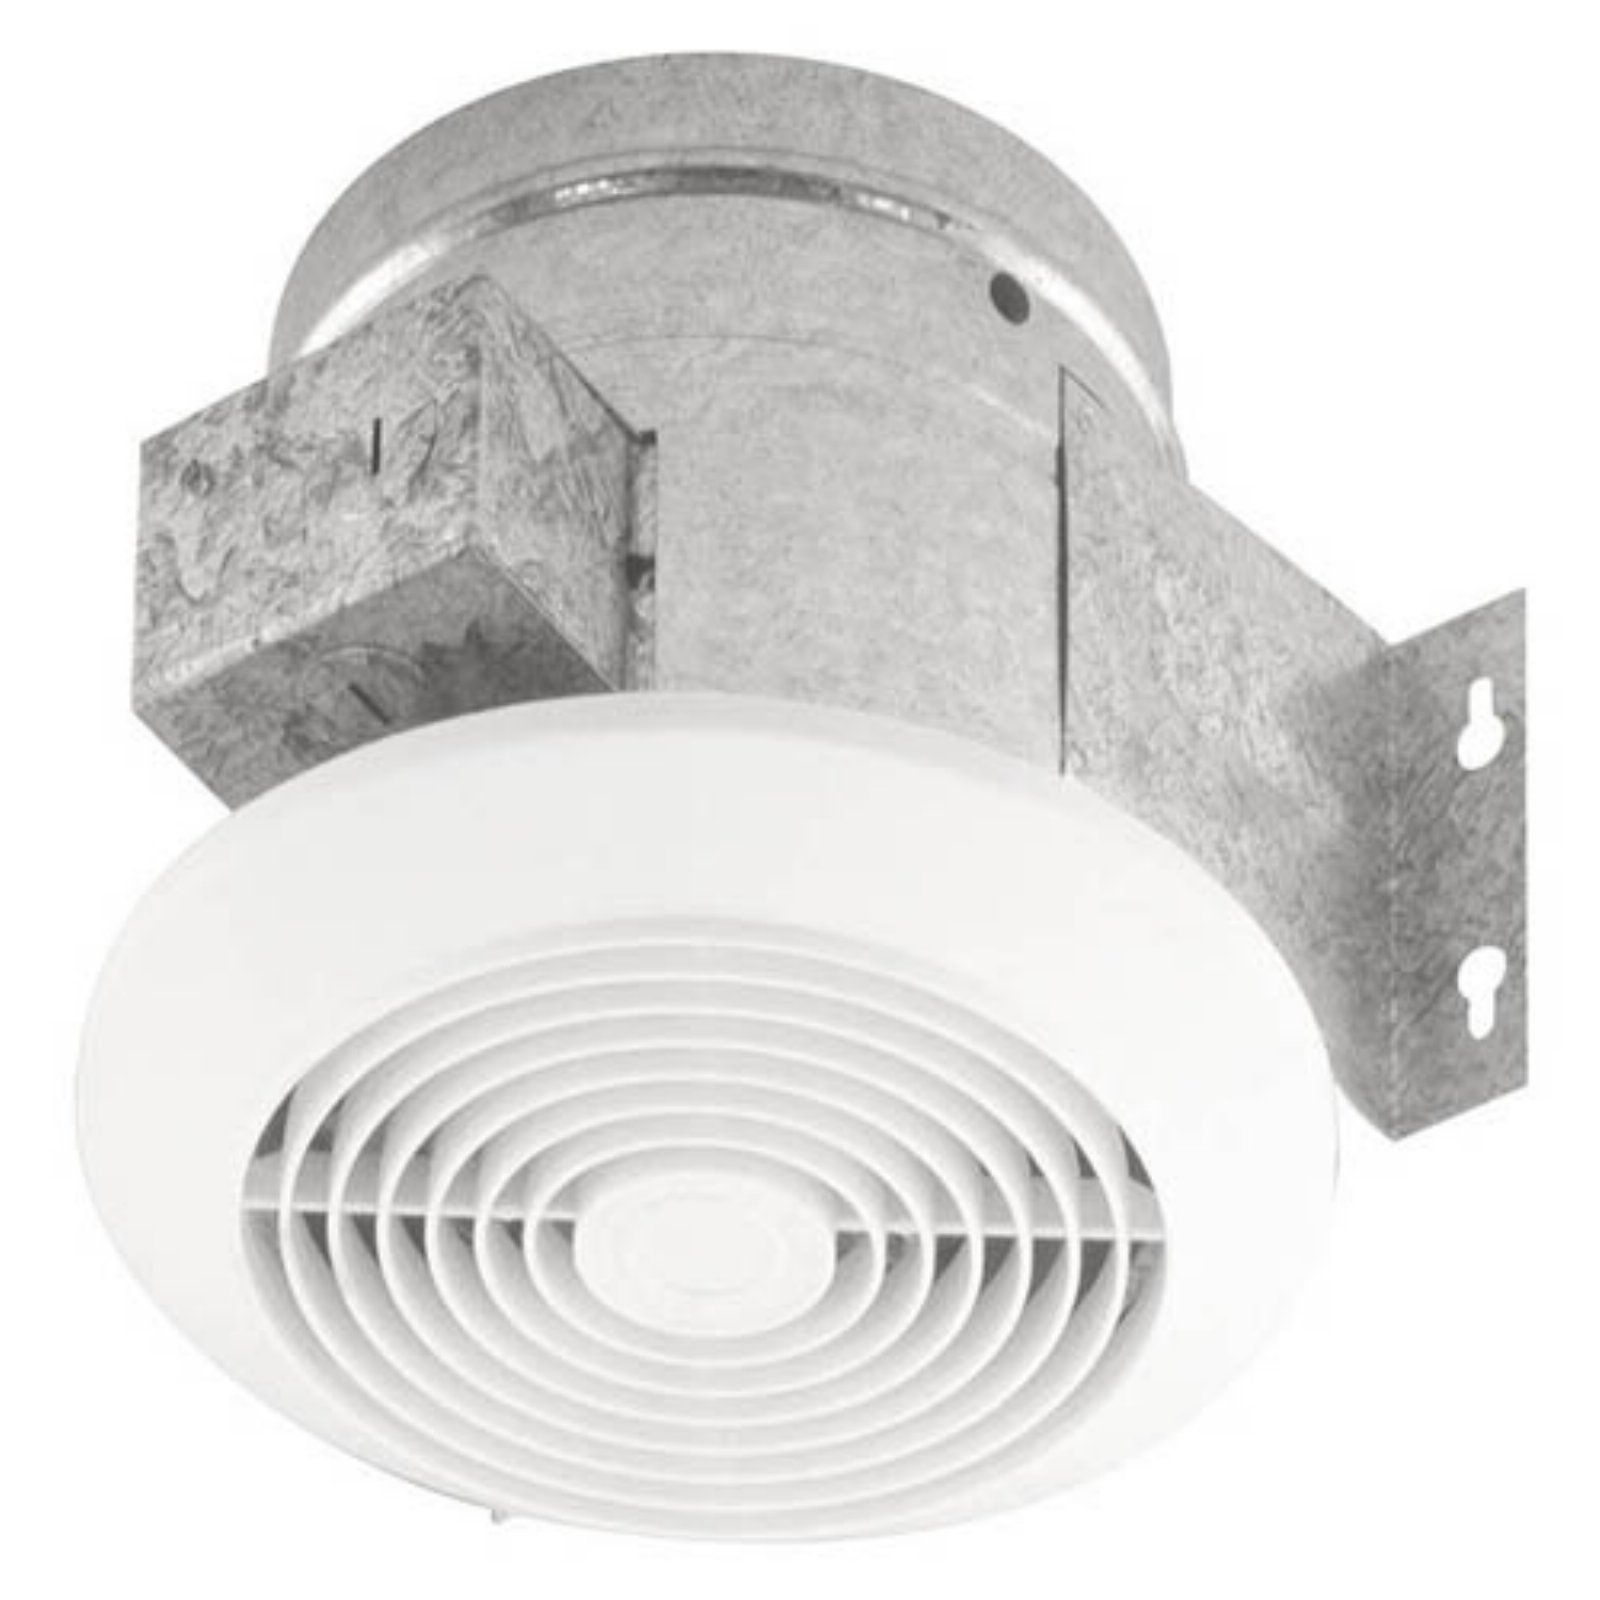 Broan Nutone 673 Bathroom Ventilation Fan Bathroom Fan with regard to dimensions 1600 X 1600